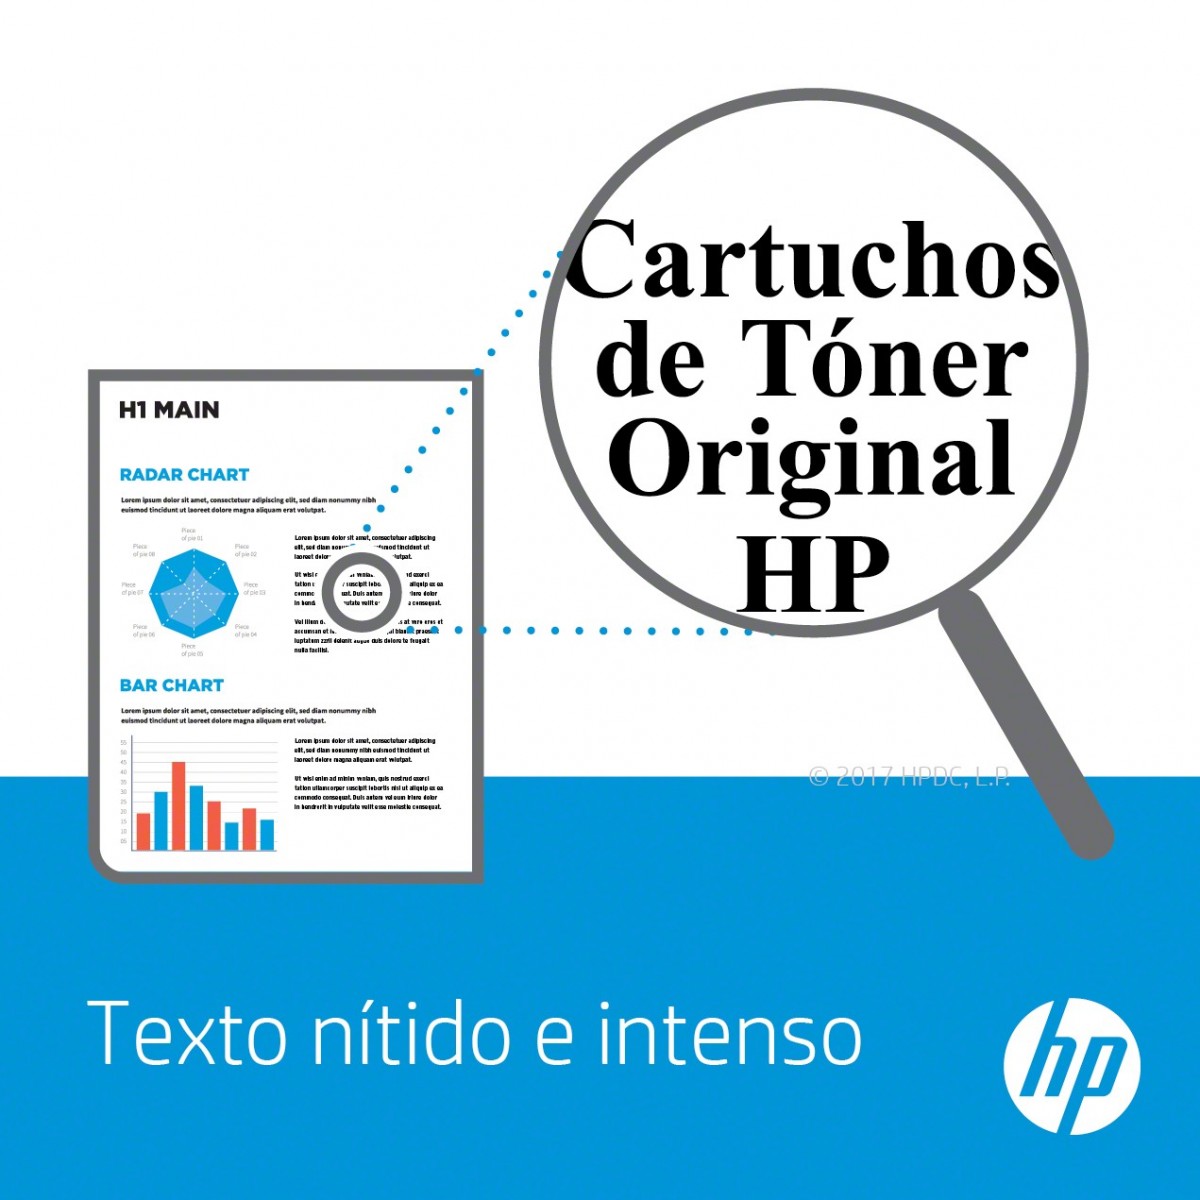 HP C9725A - 150000 pages - 2.1 kg - 20 - 80% - 10 - 30 °C - -20 - 40 °C - 50 - 86 °F